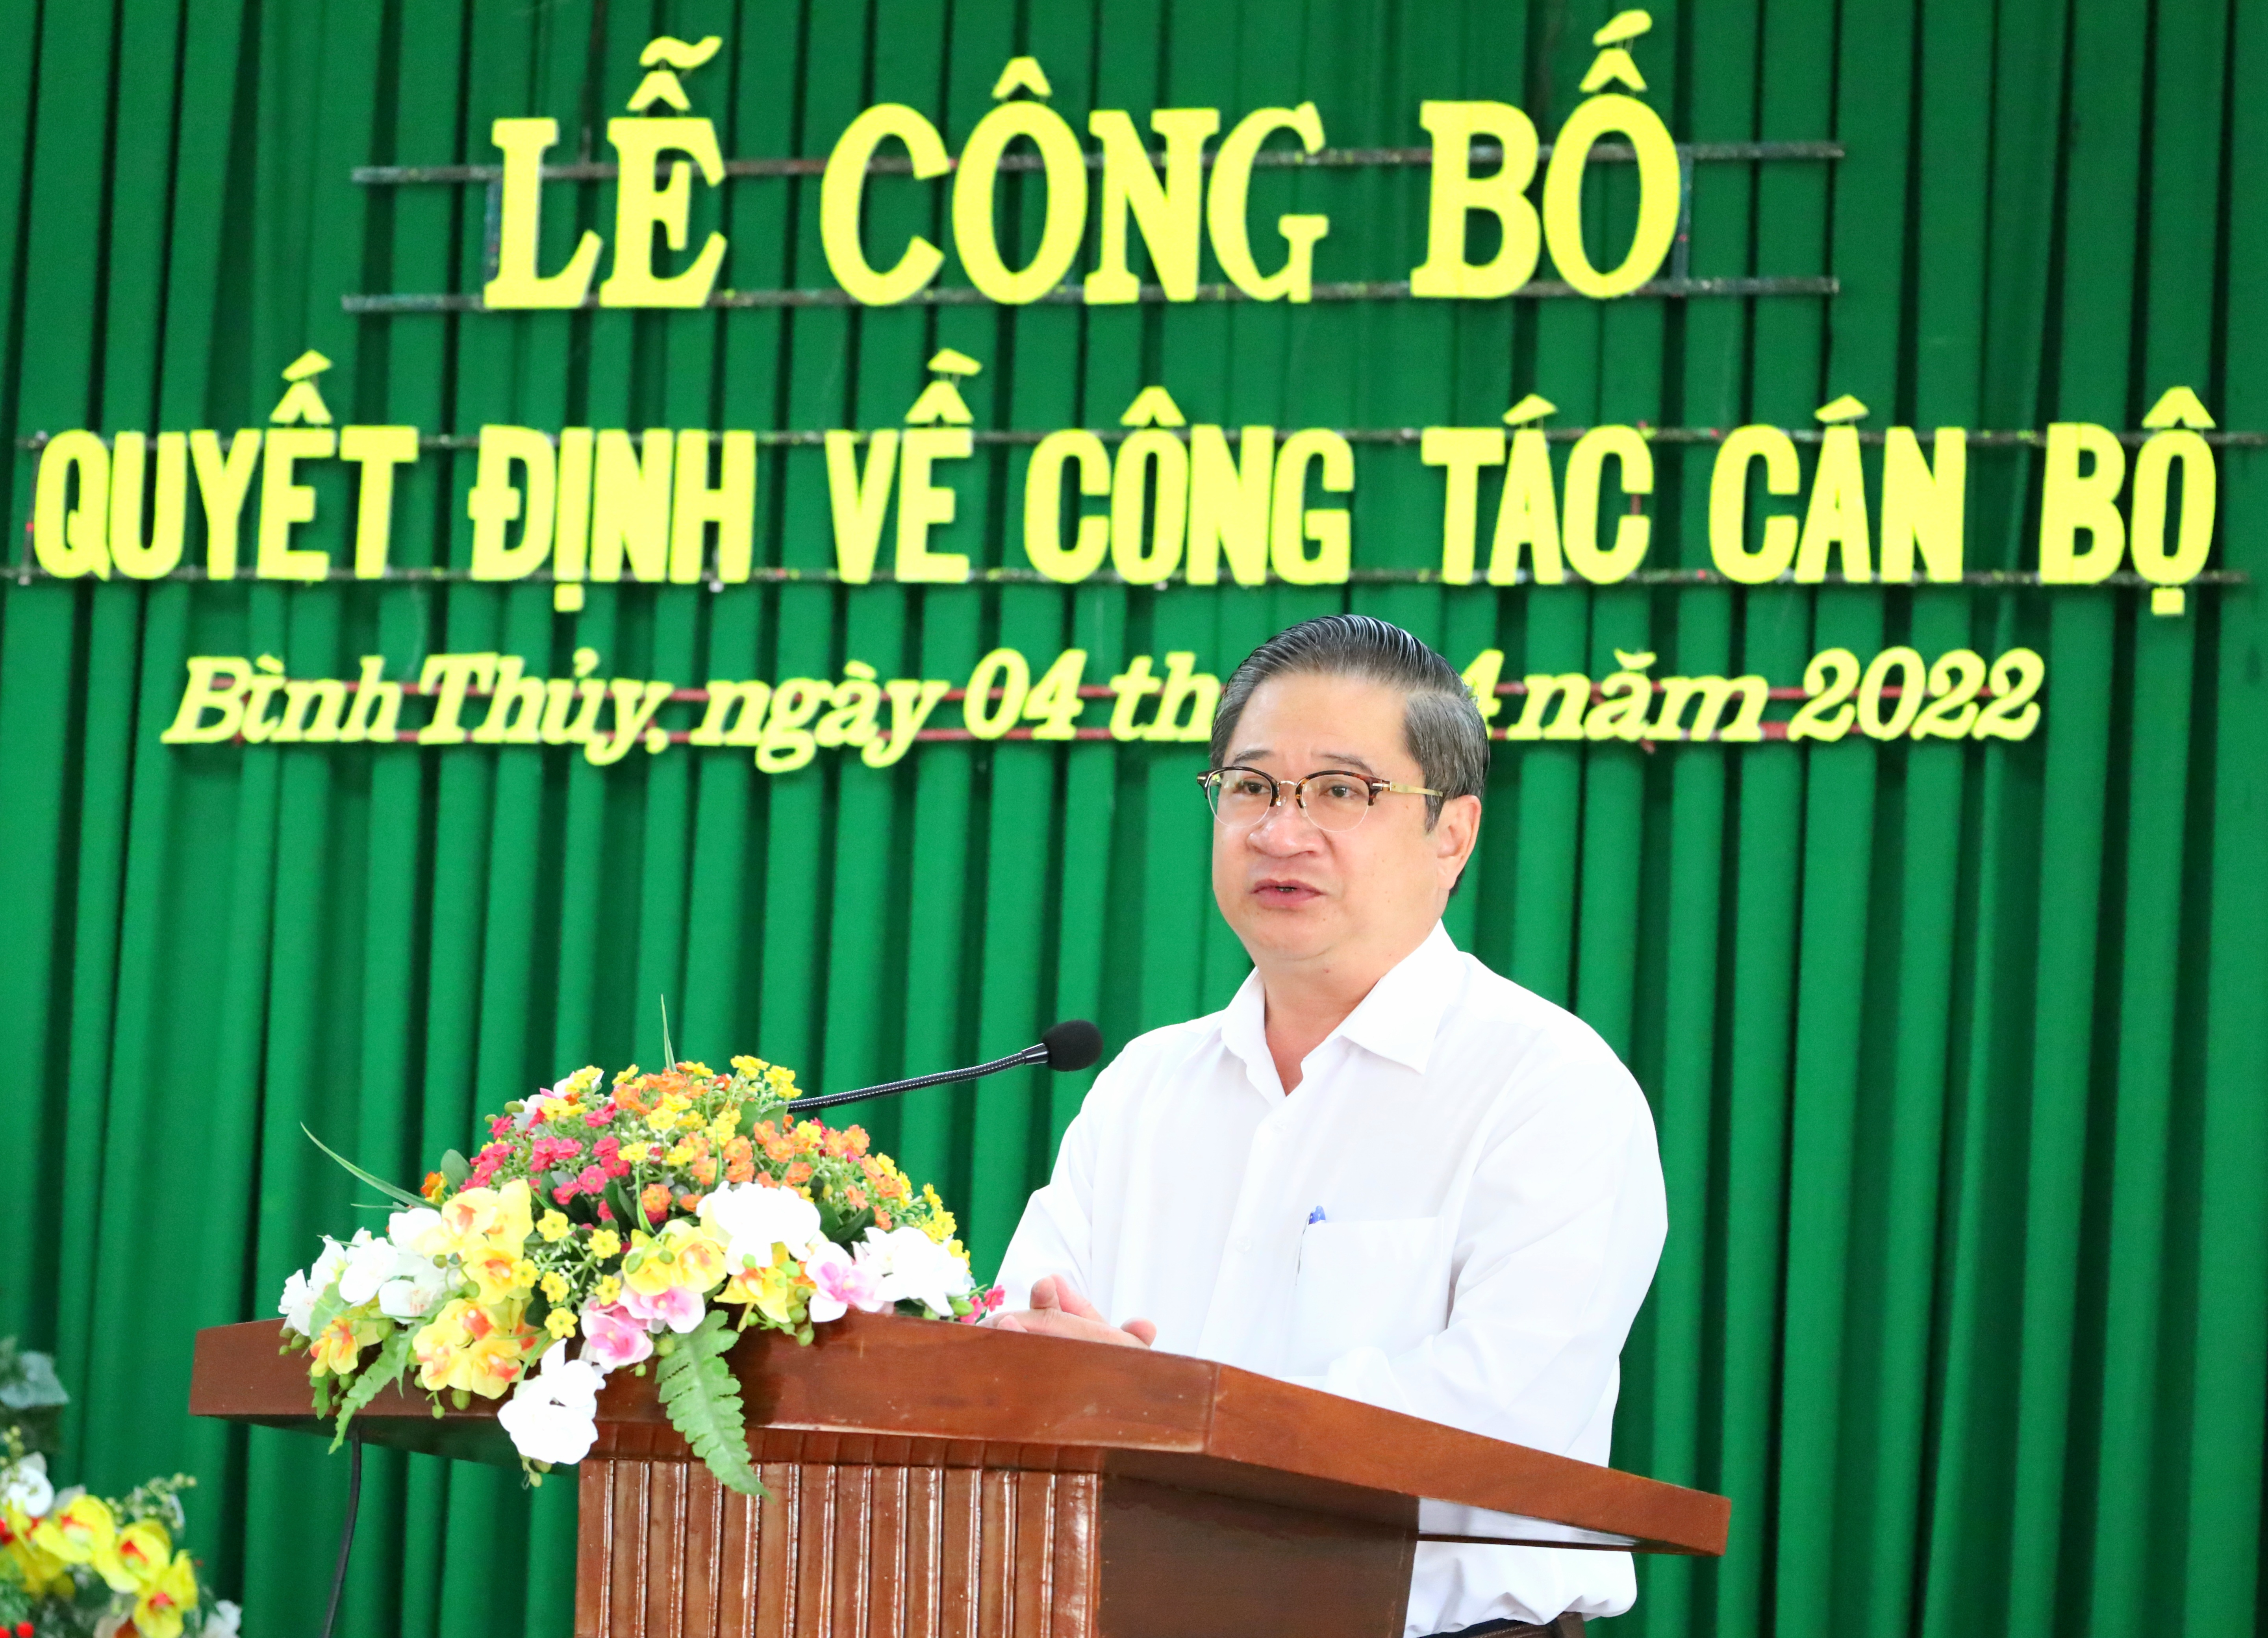 Ông Trần Việt Trường - Phó Bí thư Thành ủy, Chủ tịch UBND TP. Cần Thơ phát biểu tại buổi trao quyết định.